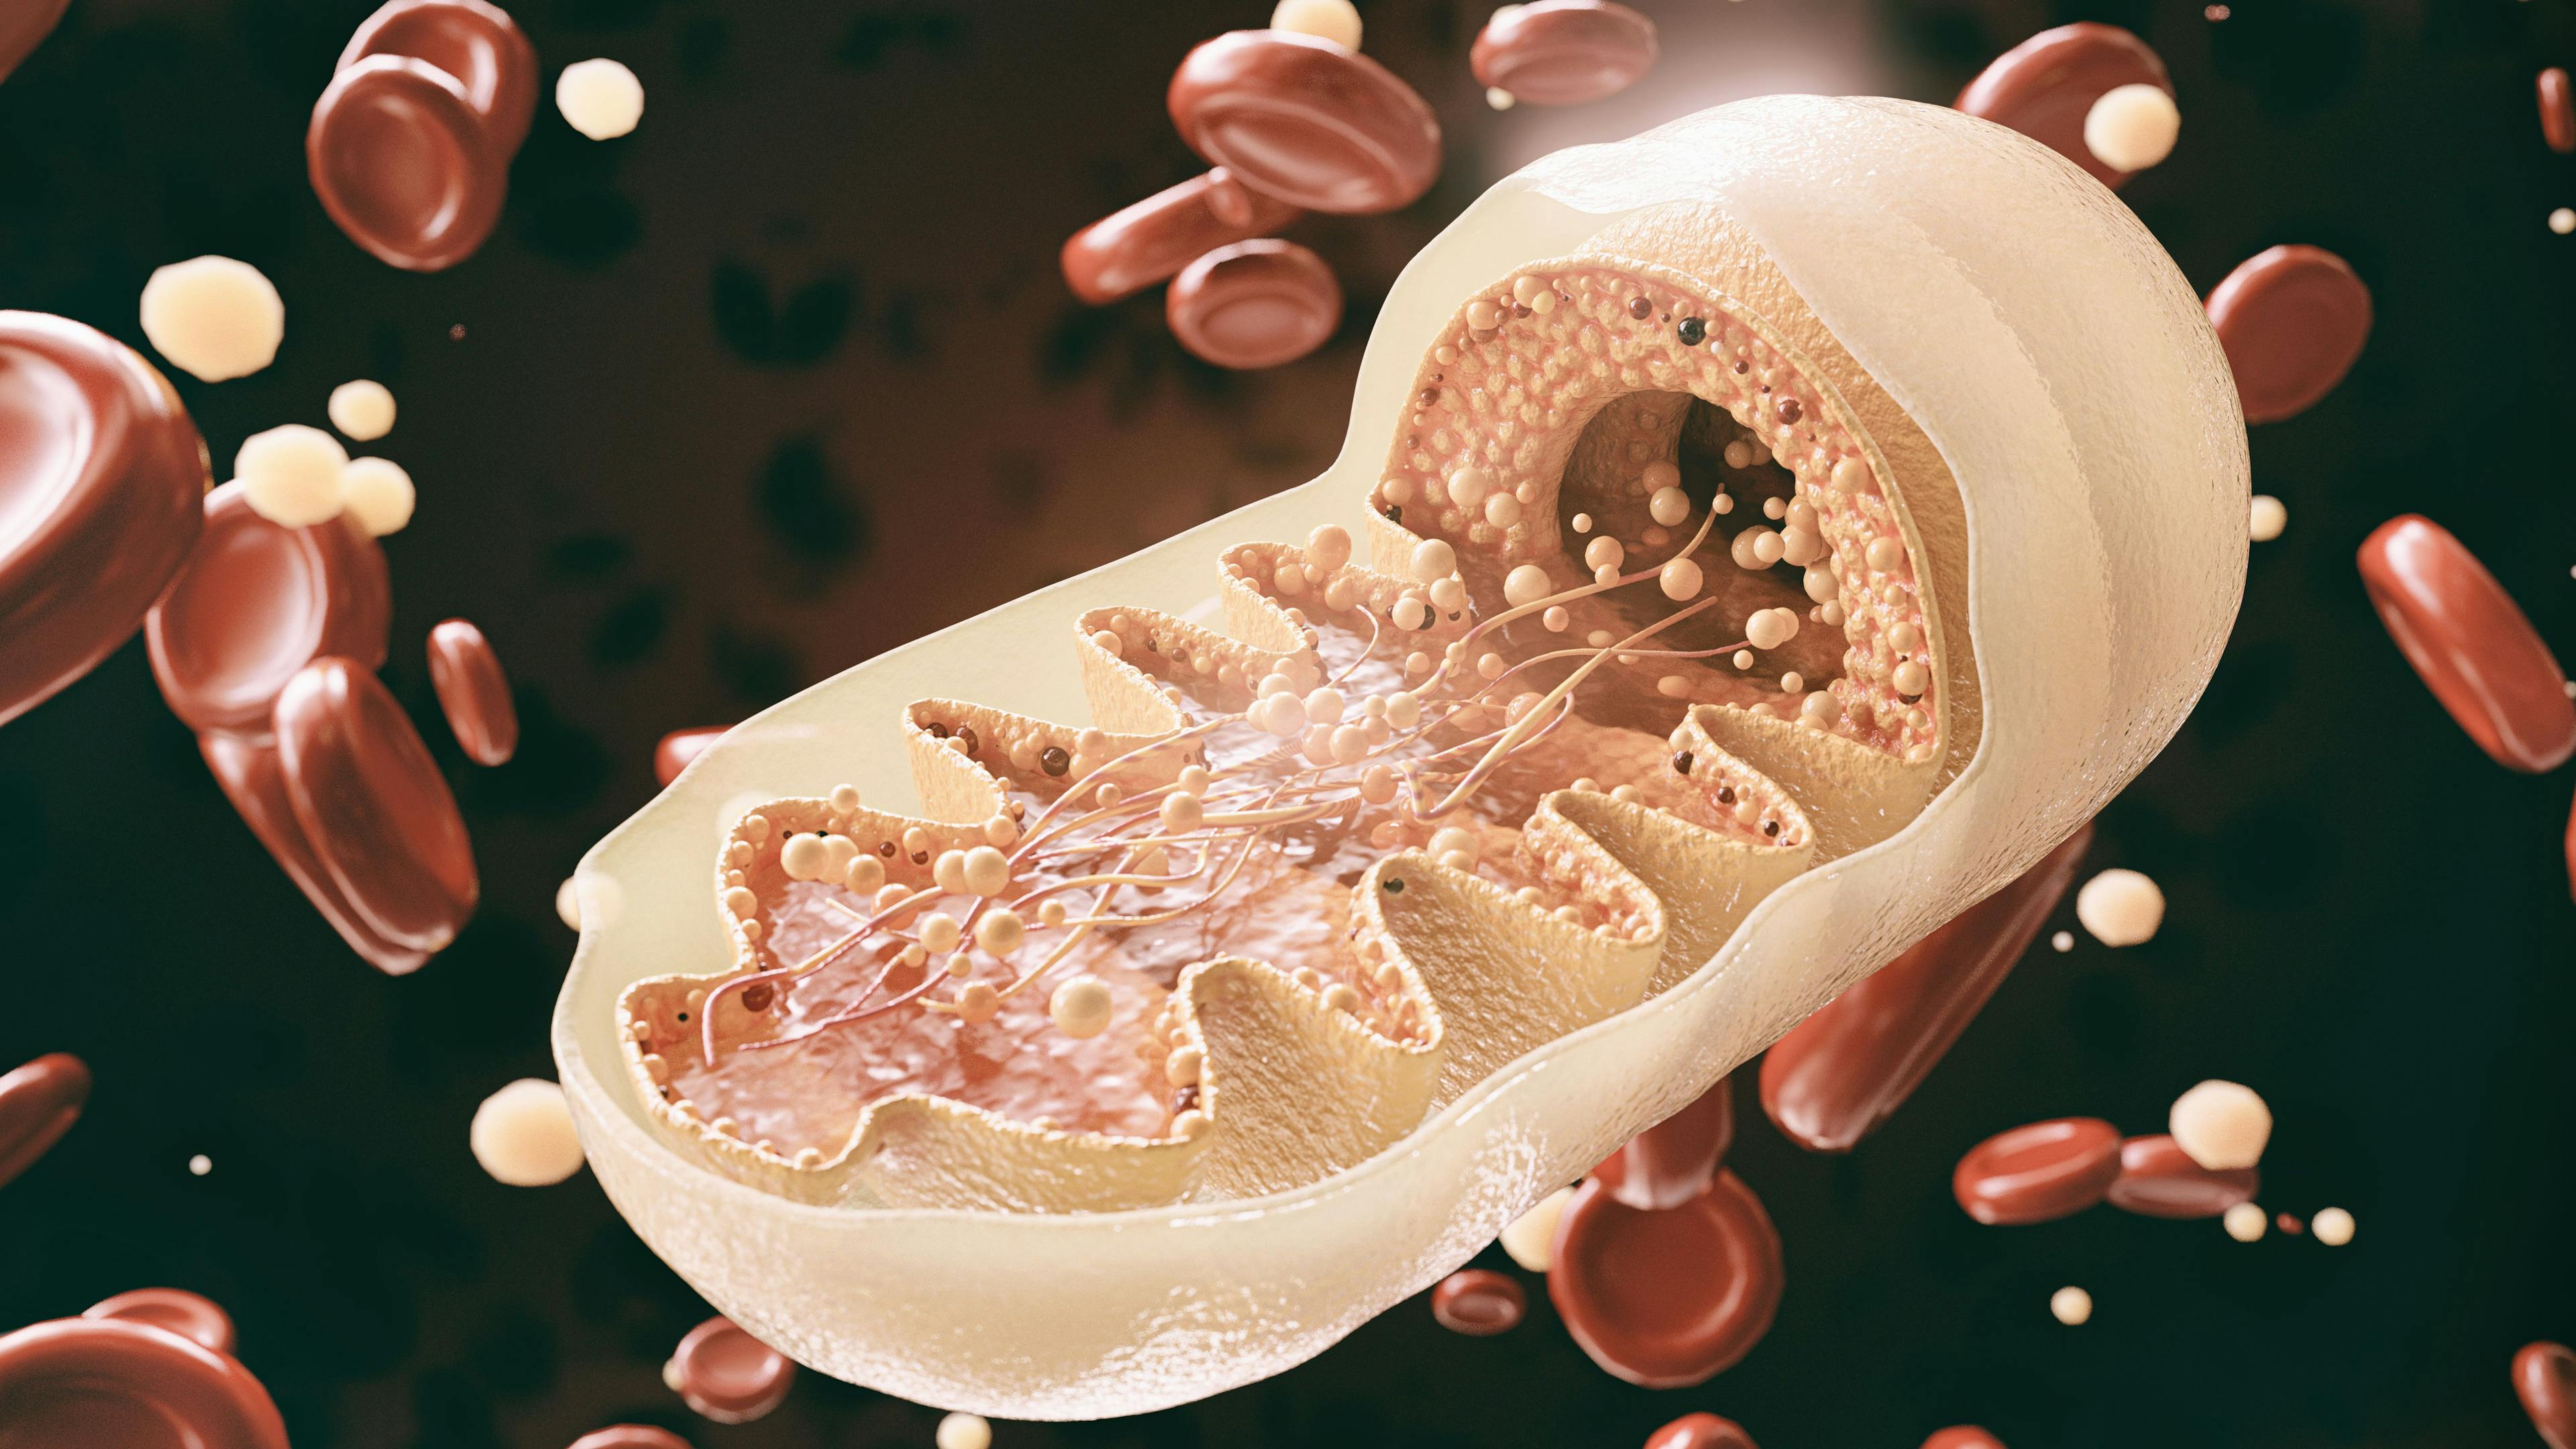 3D Mitochondria | image credit: crevis - stock.adobe.com